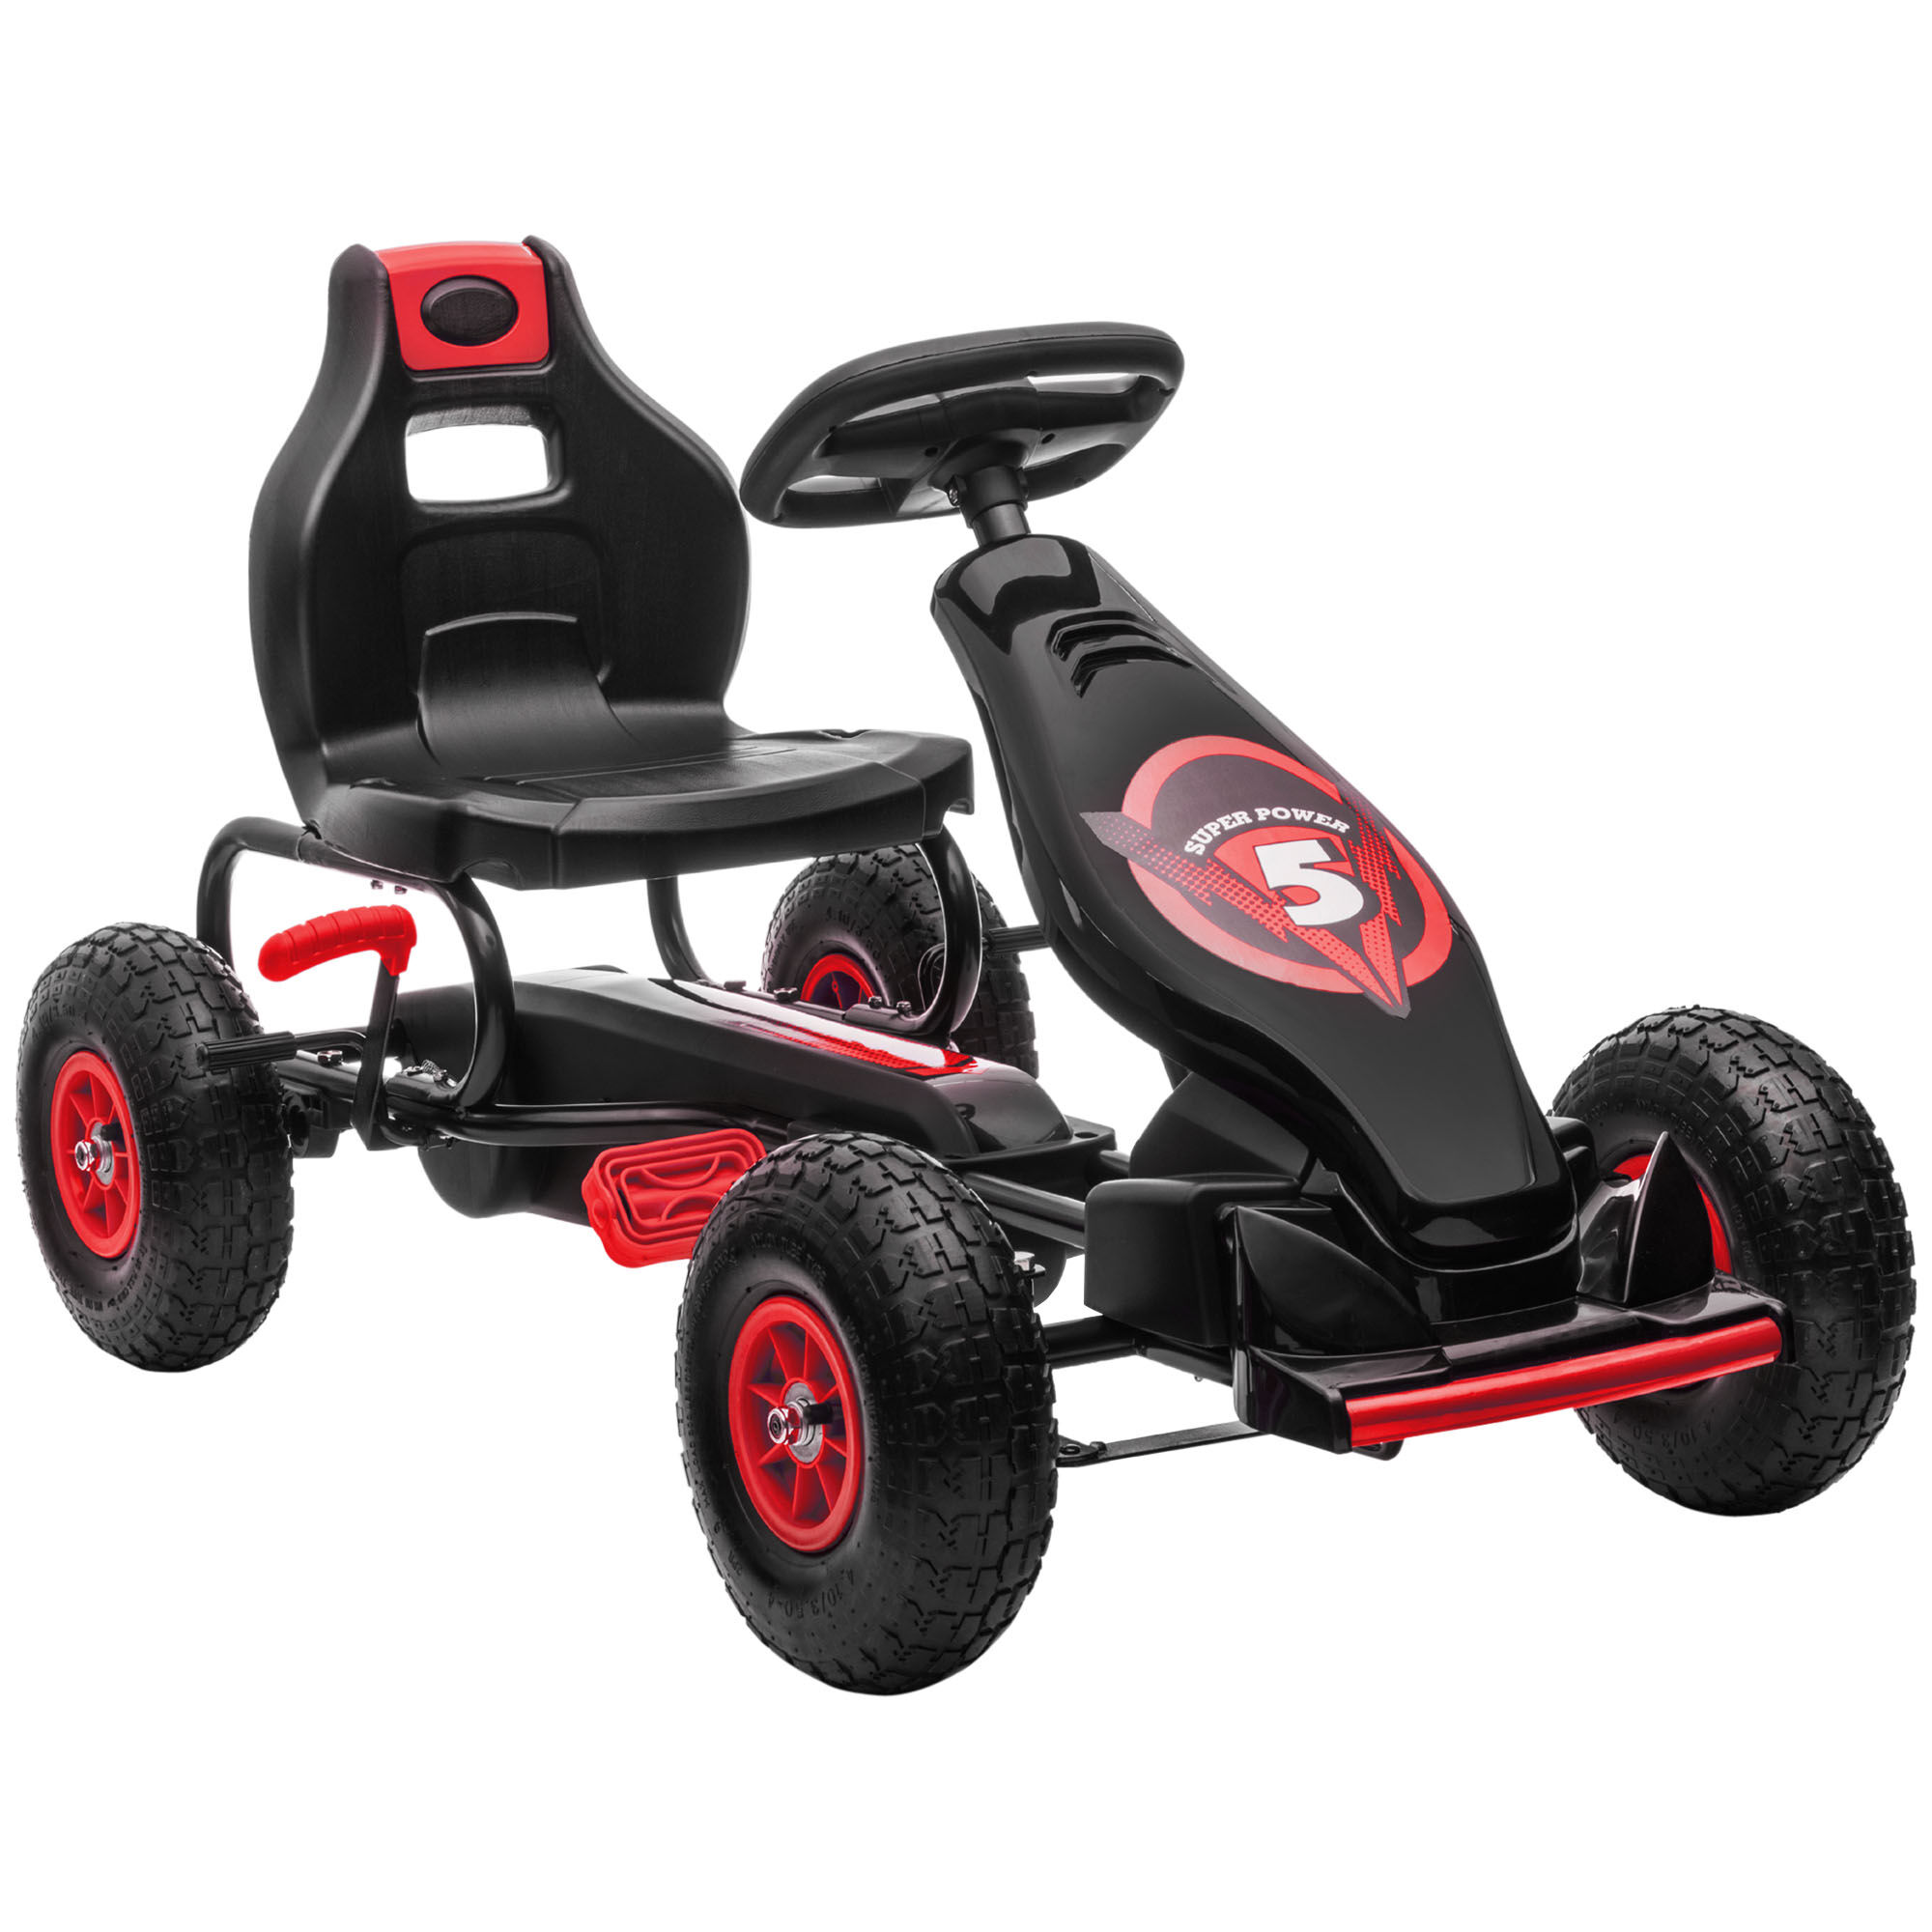 Homcom Go Kart a Pedali per Bambini da 5-12 Anni con Sedile Regolabile e Ruote in Gonfiabili, Rosso